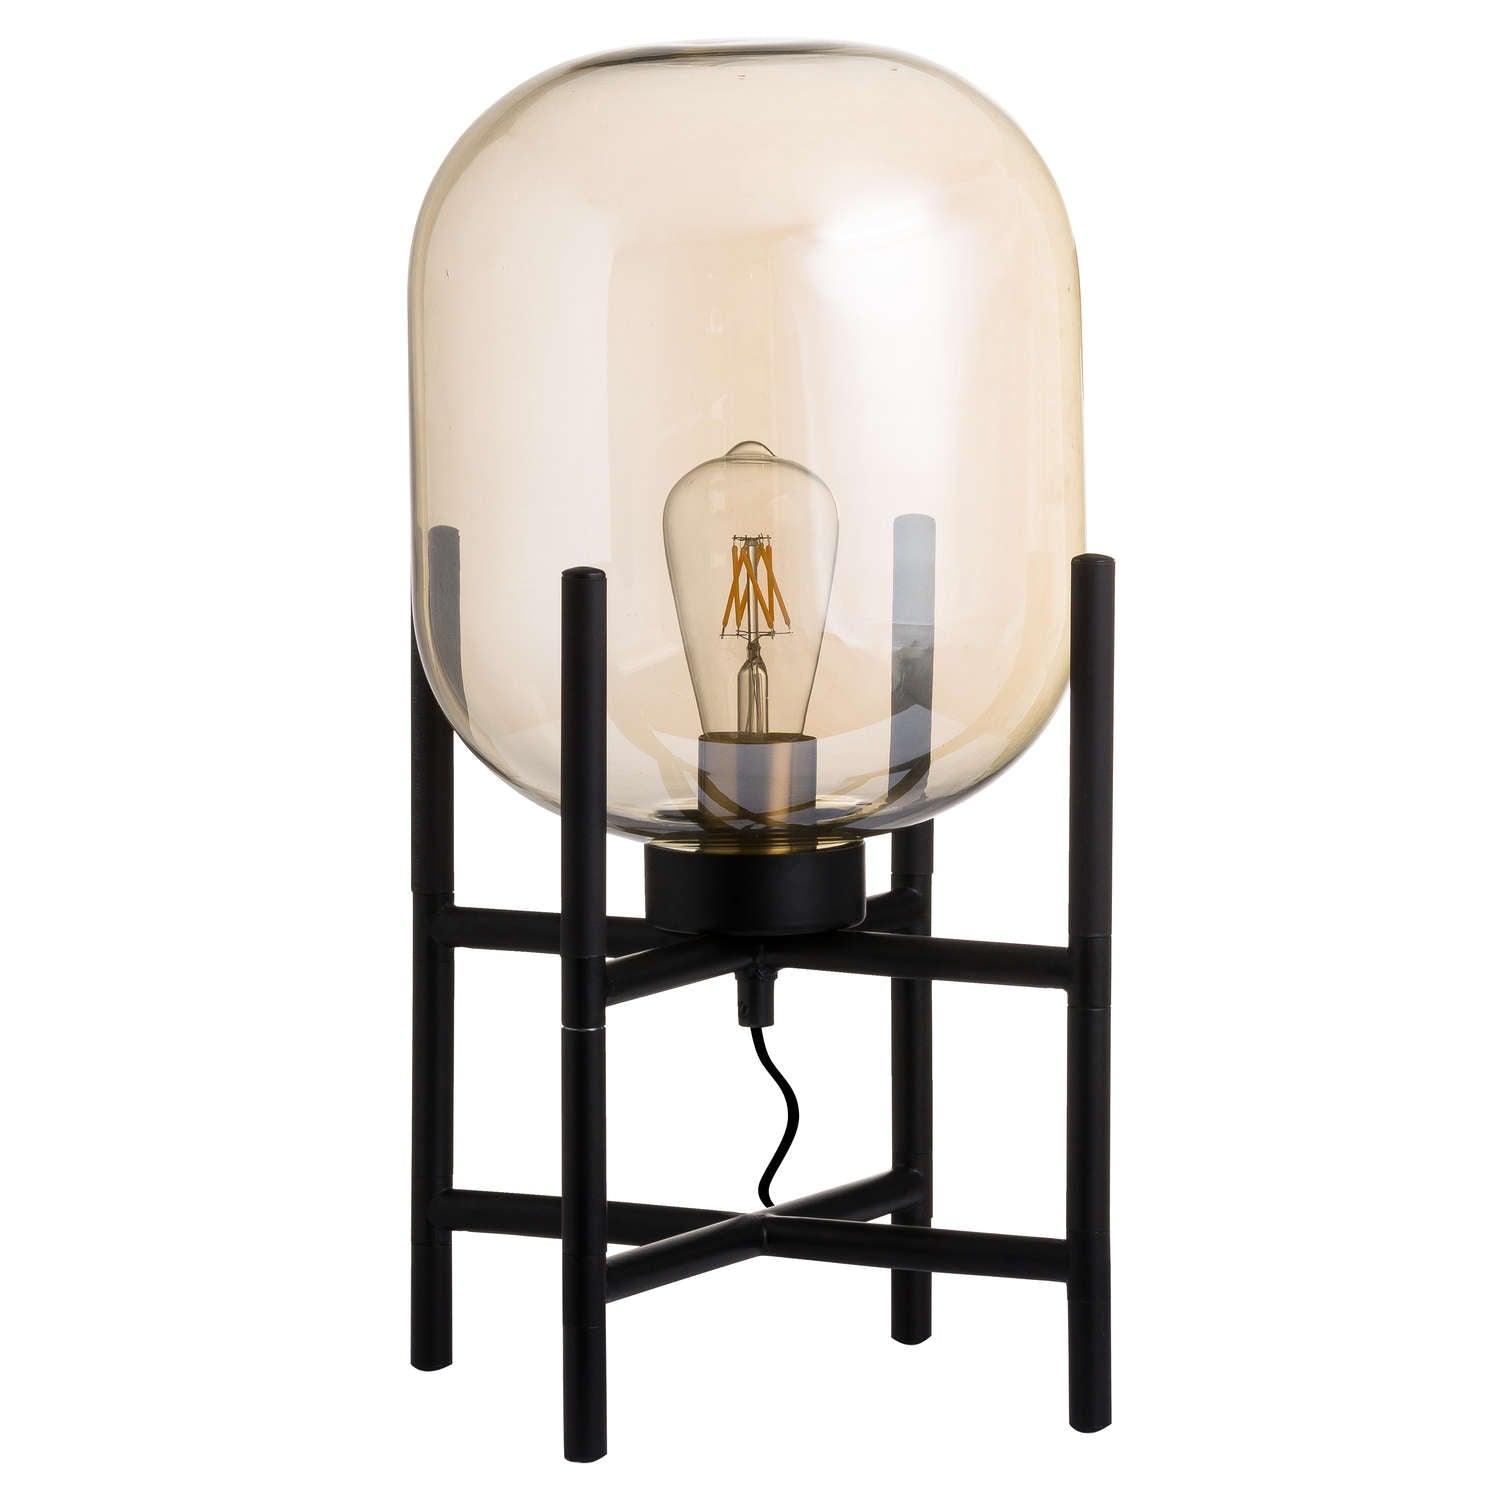 Vintage Industrial Glass Glow Lamp - Vookoo Lifestyle